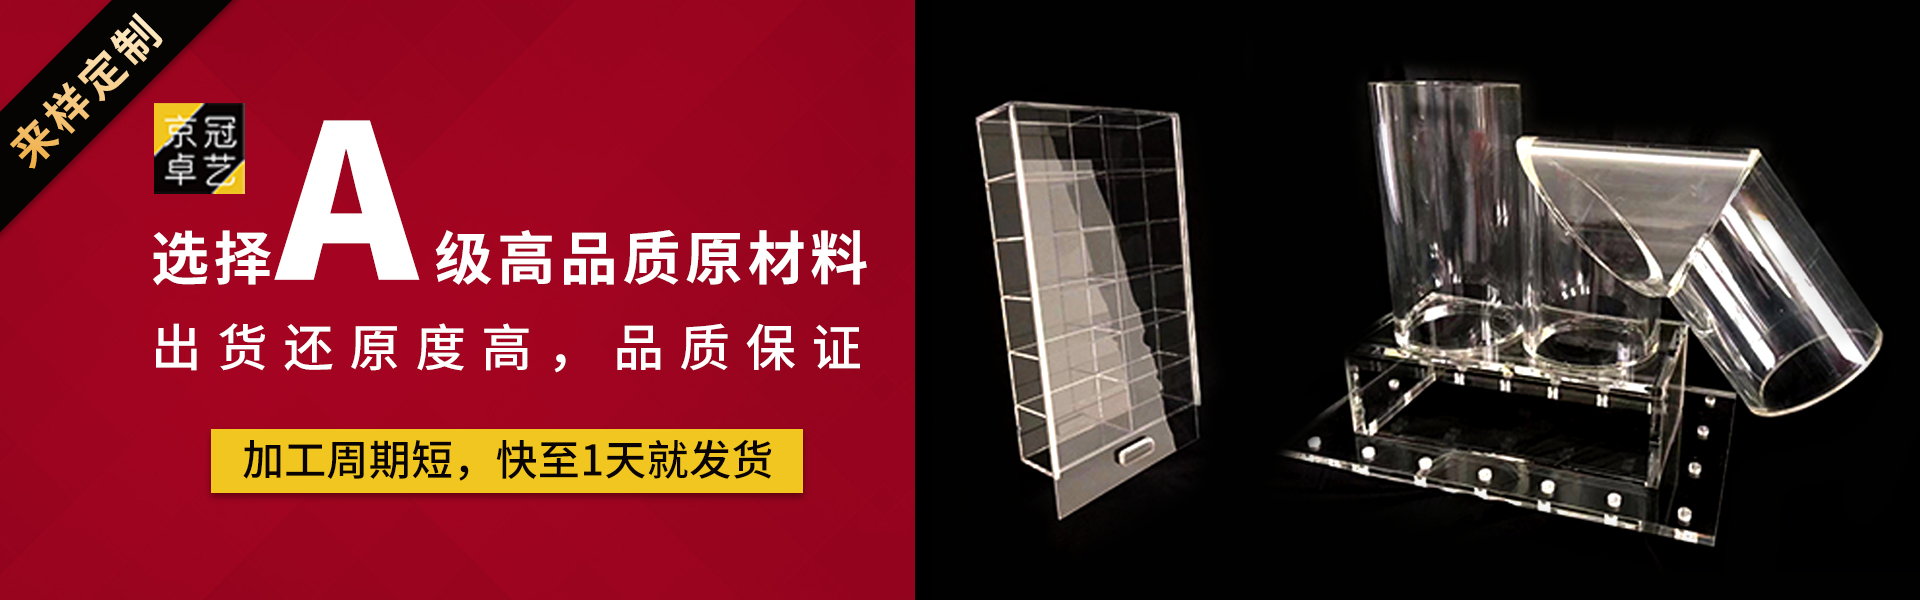 北京京冠卓艺有机玻璃科技有限公司